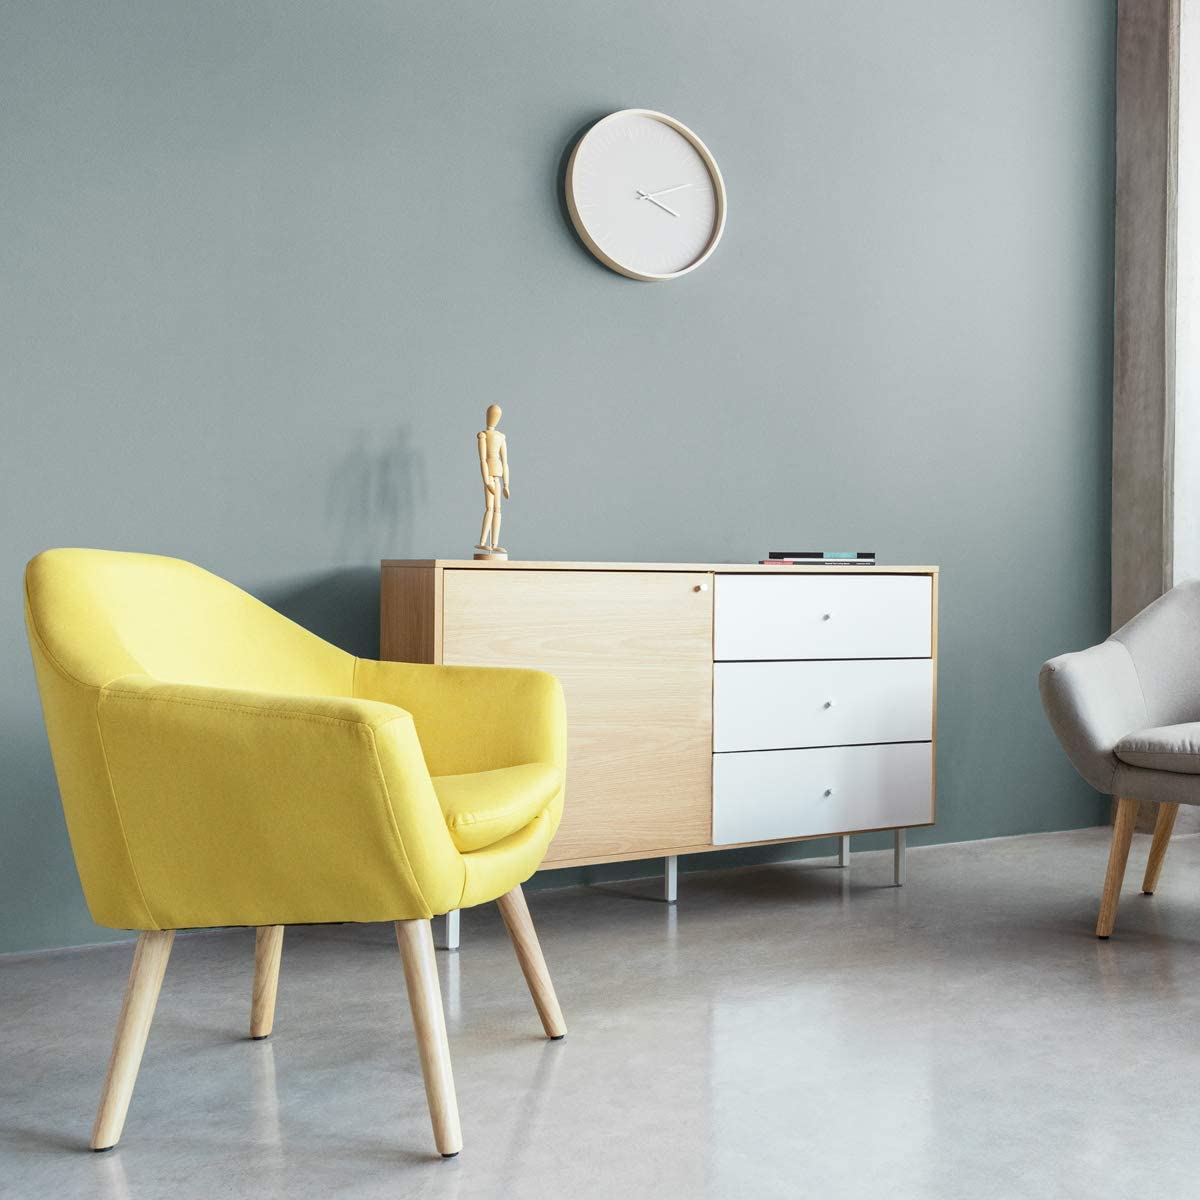 Un sillón minimalista individual estilo nórdico